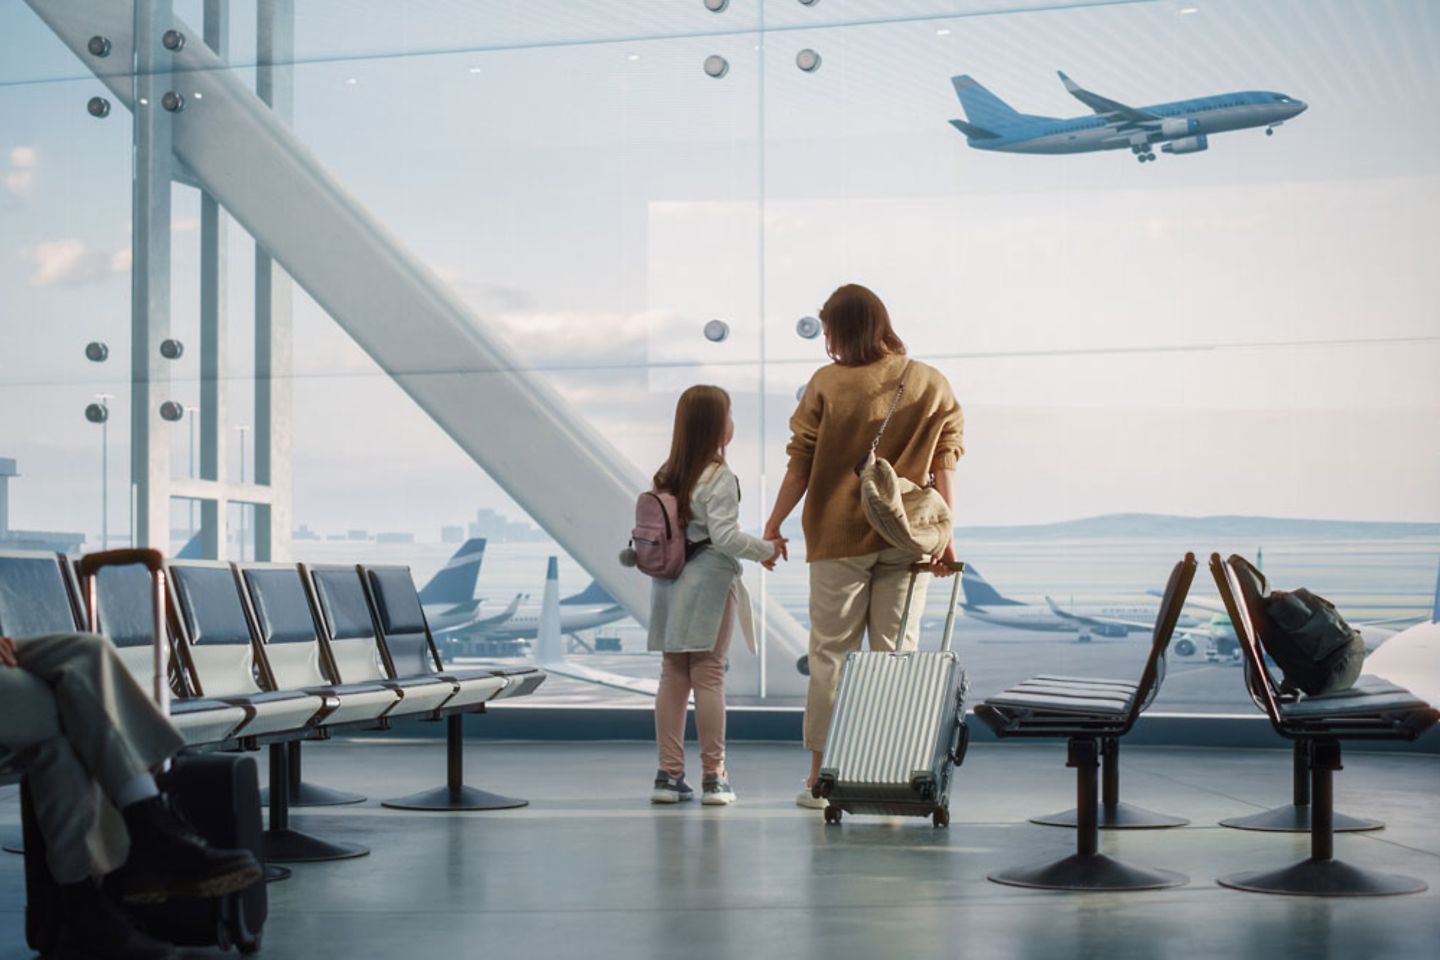 Madre e hija observan el despegue y aterrizaje de los aviones desde la ventanilla de la sala de espera del aeropuerto.